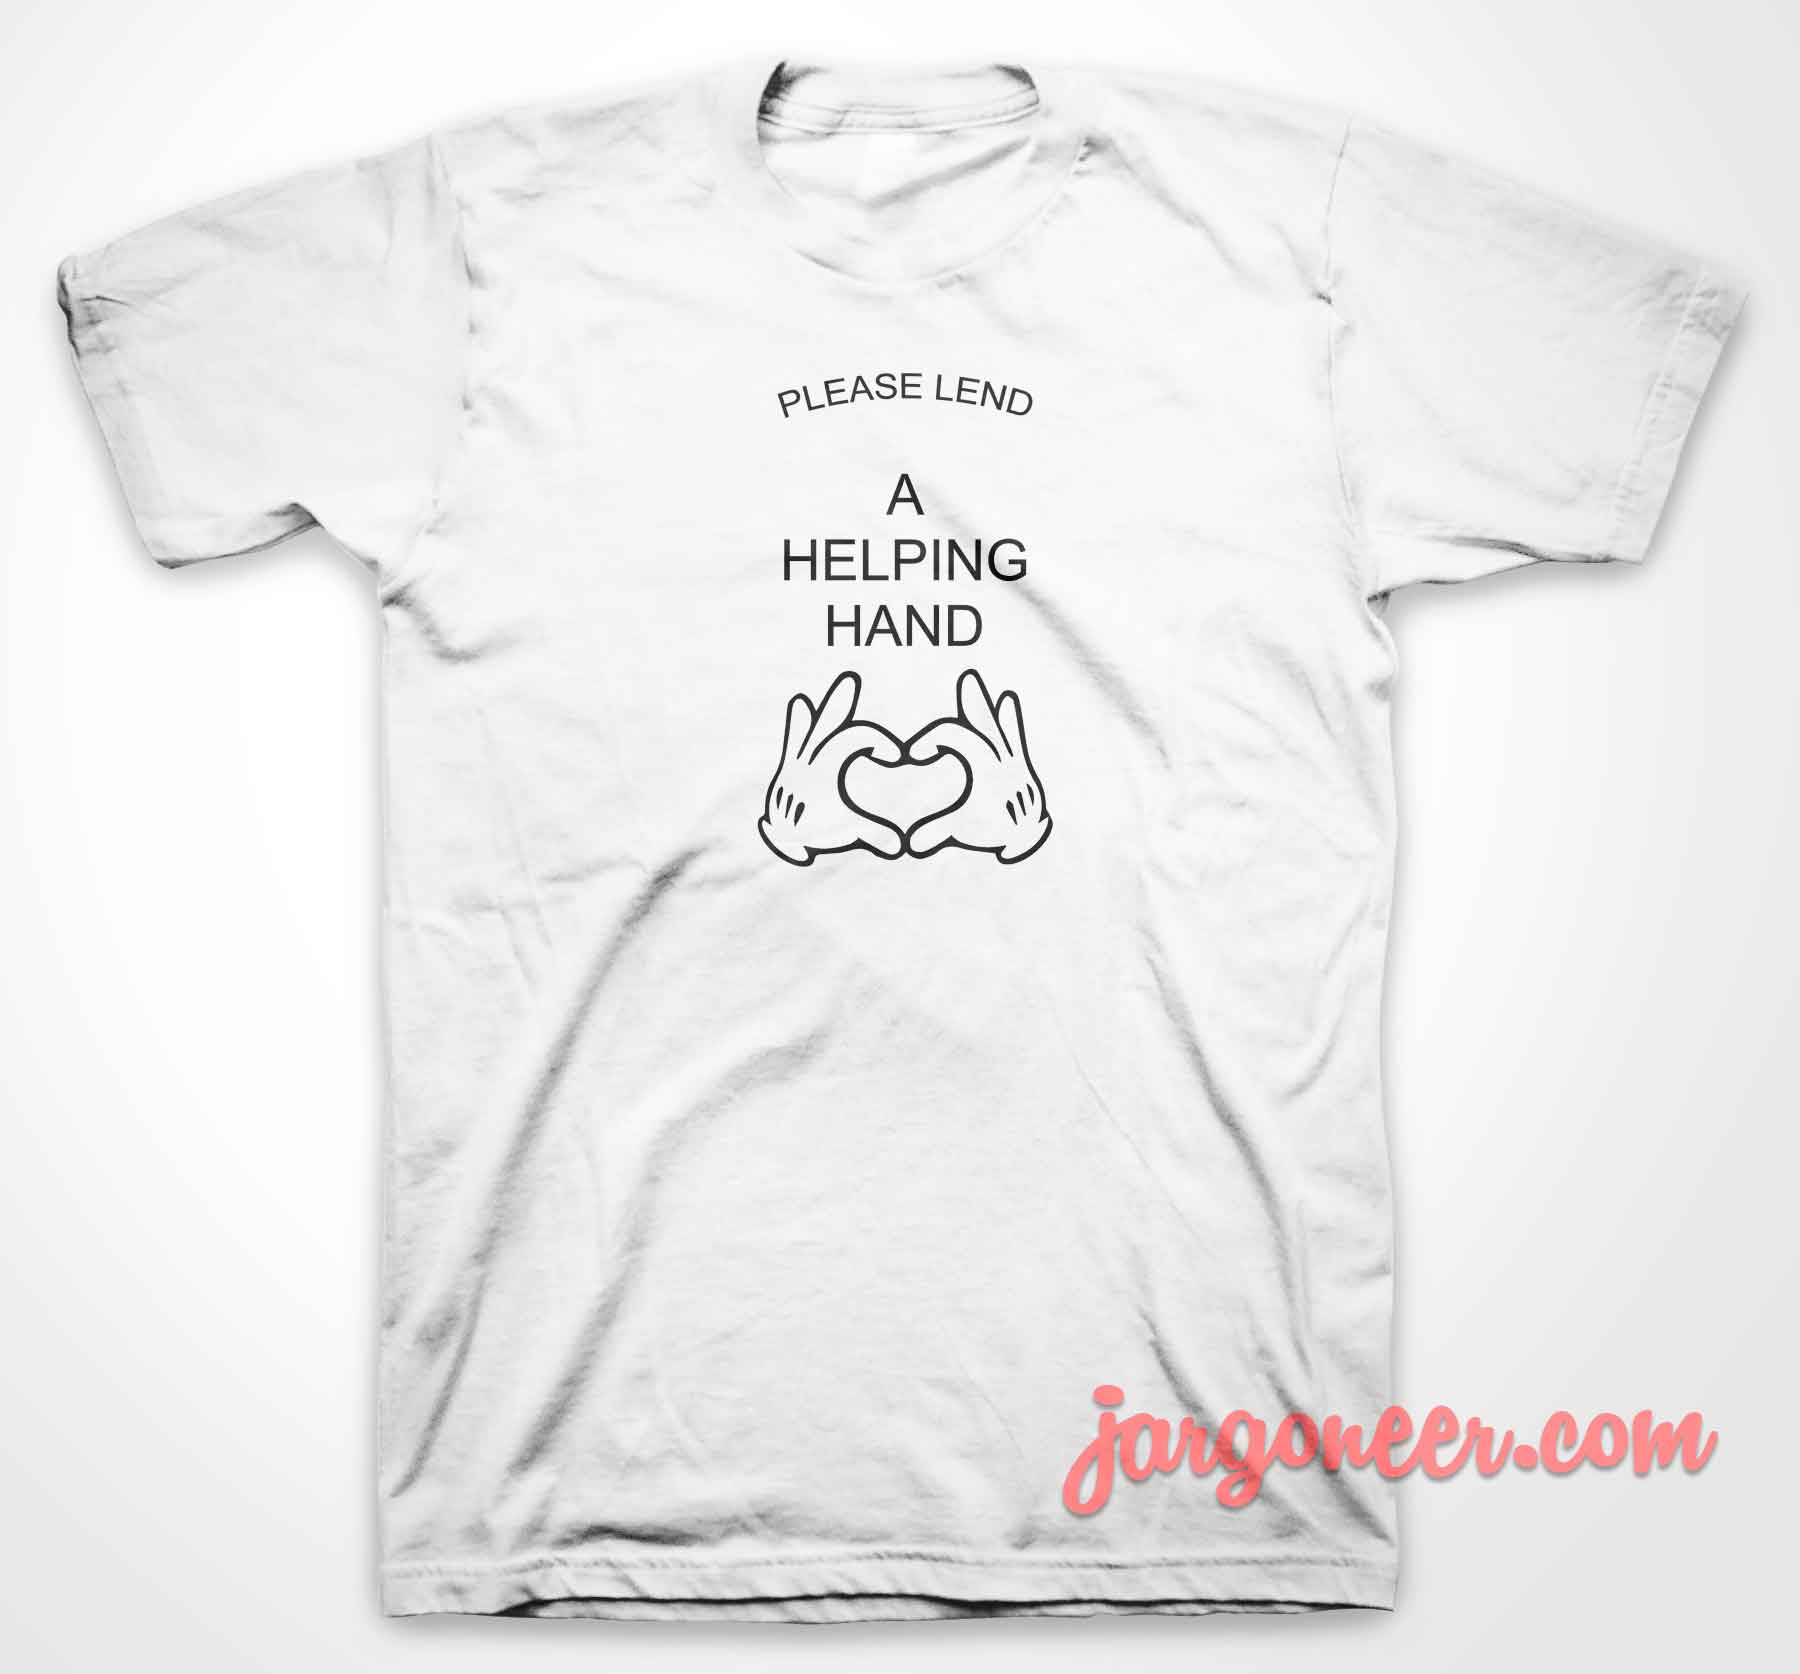 Please Land A Helpng Hand 3 - Shop Unique Graphic Cool Shirt Designs